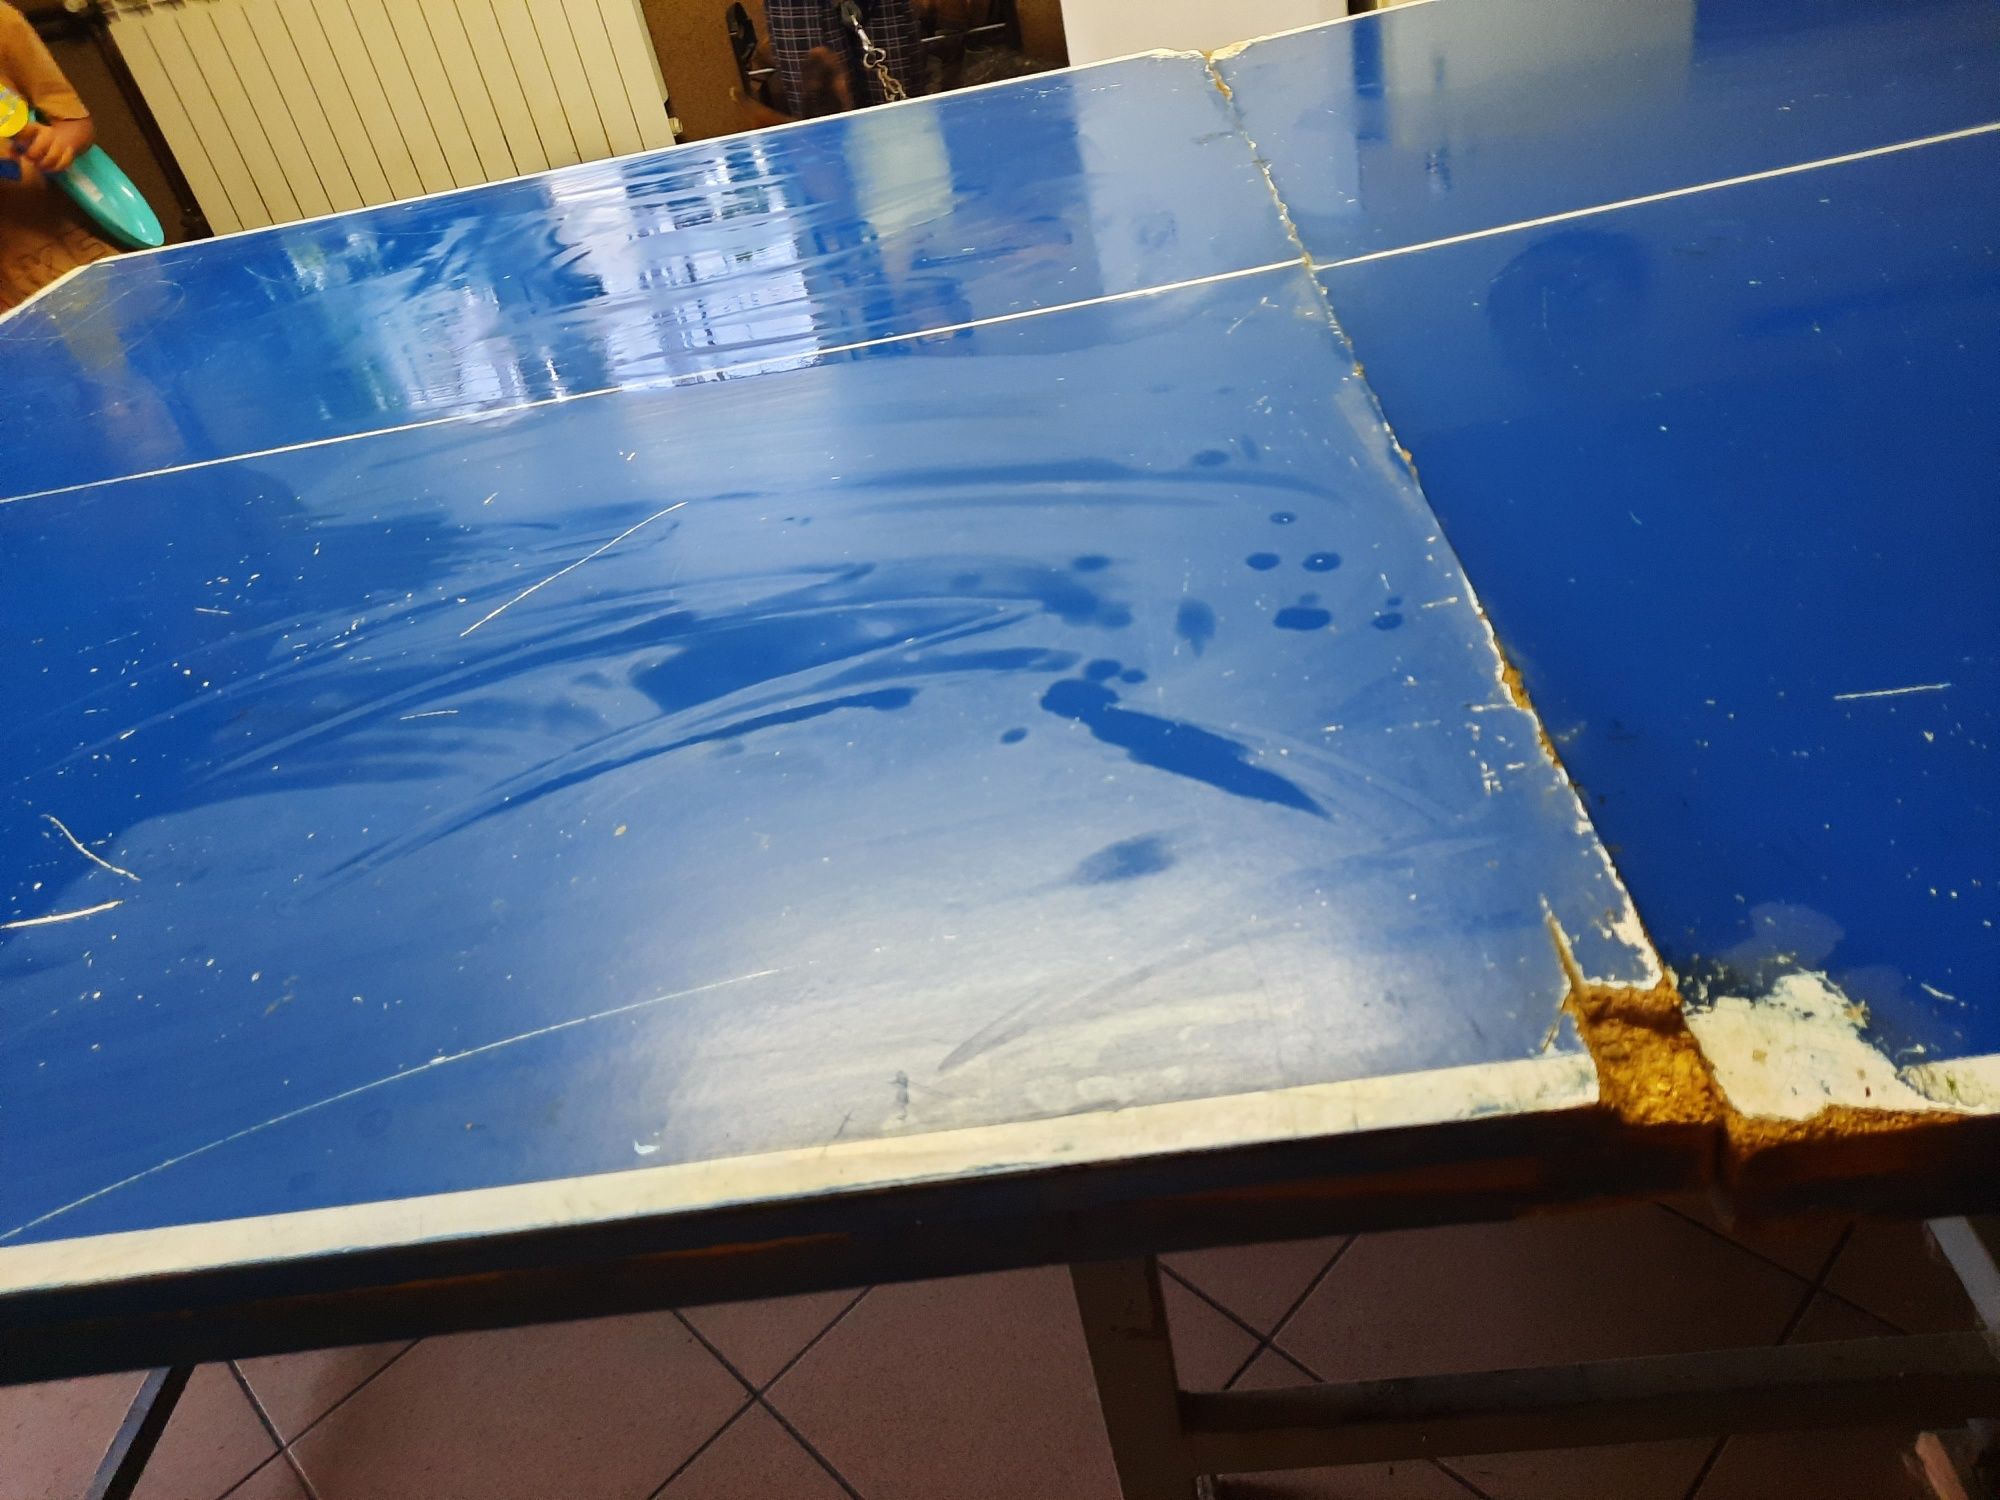 Stół do ping-pong